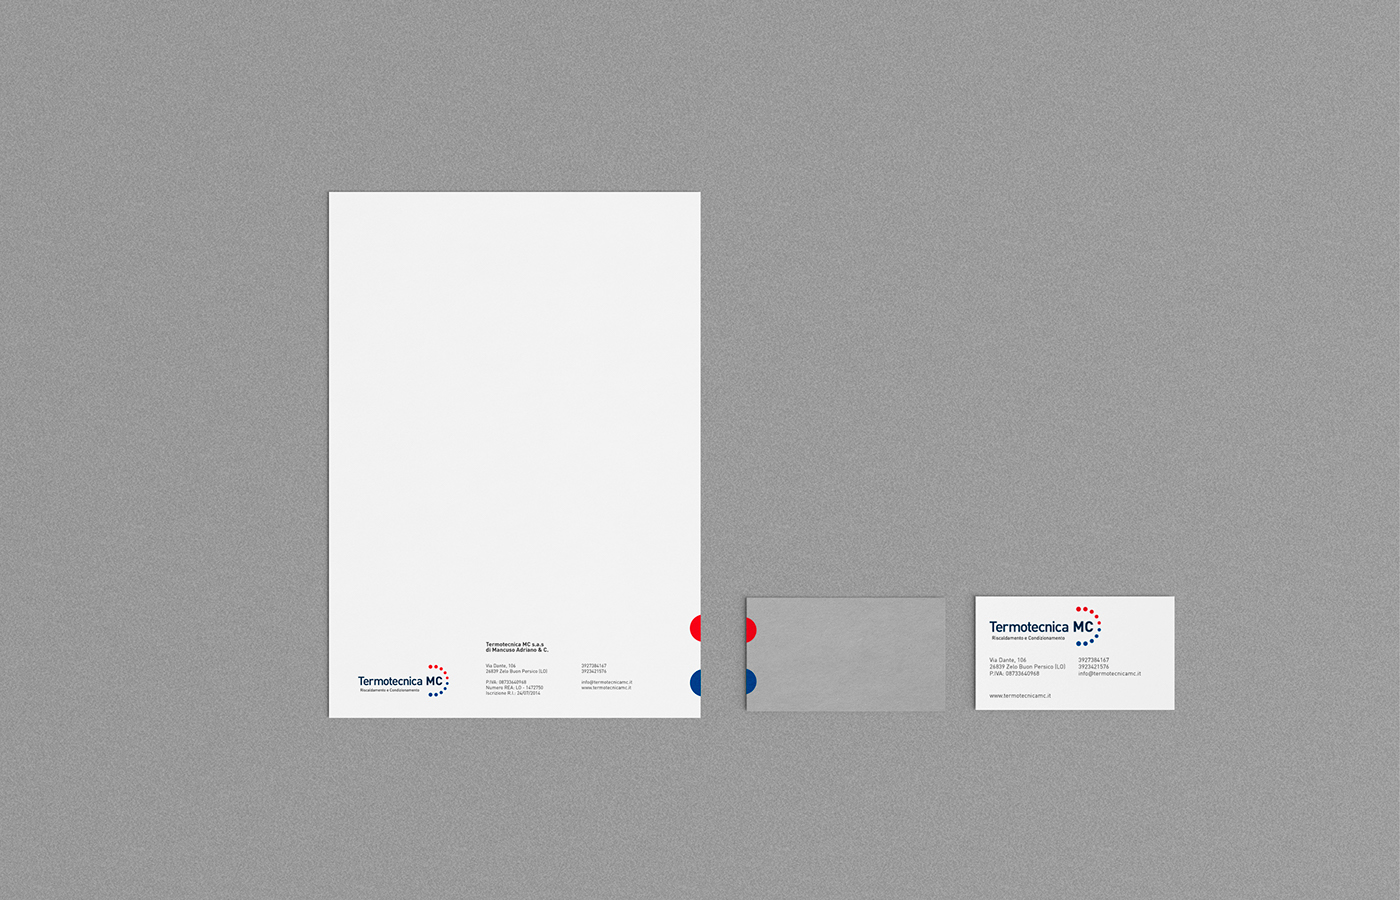 Logo Design Corporate Identity web solution Responsive graphic design Logotype brand trattiunici milan andrea mantuano